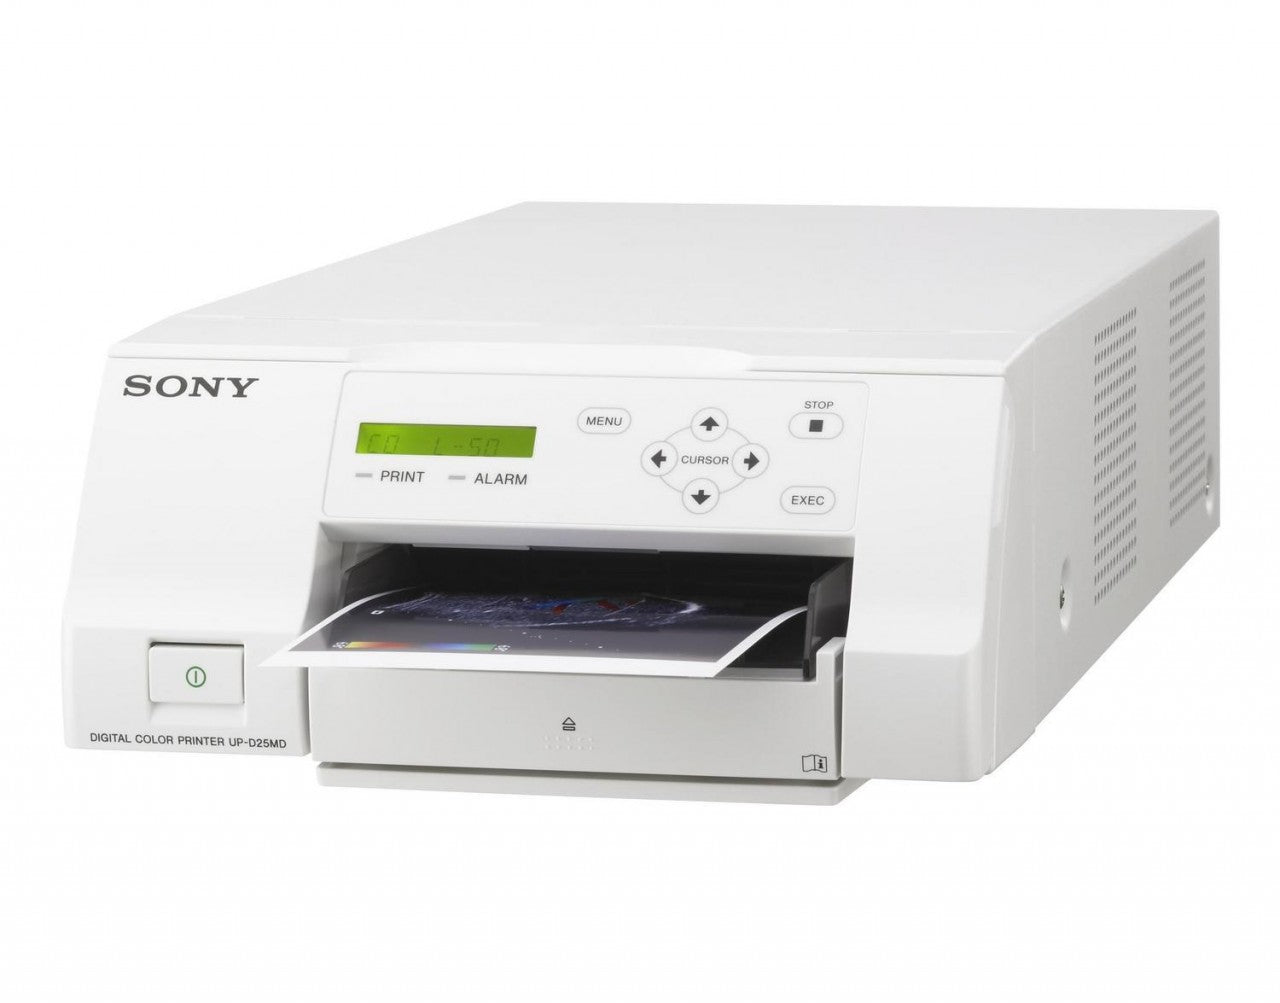 Sony UP-D25MD Color Digital Printer